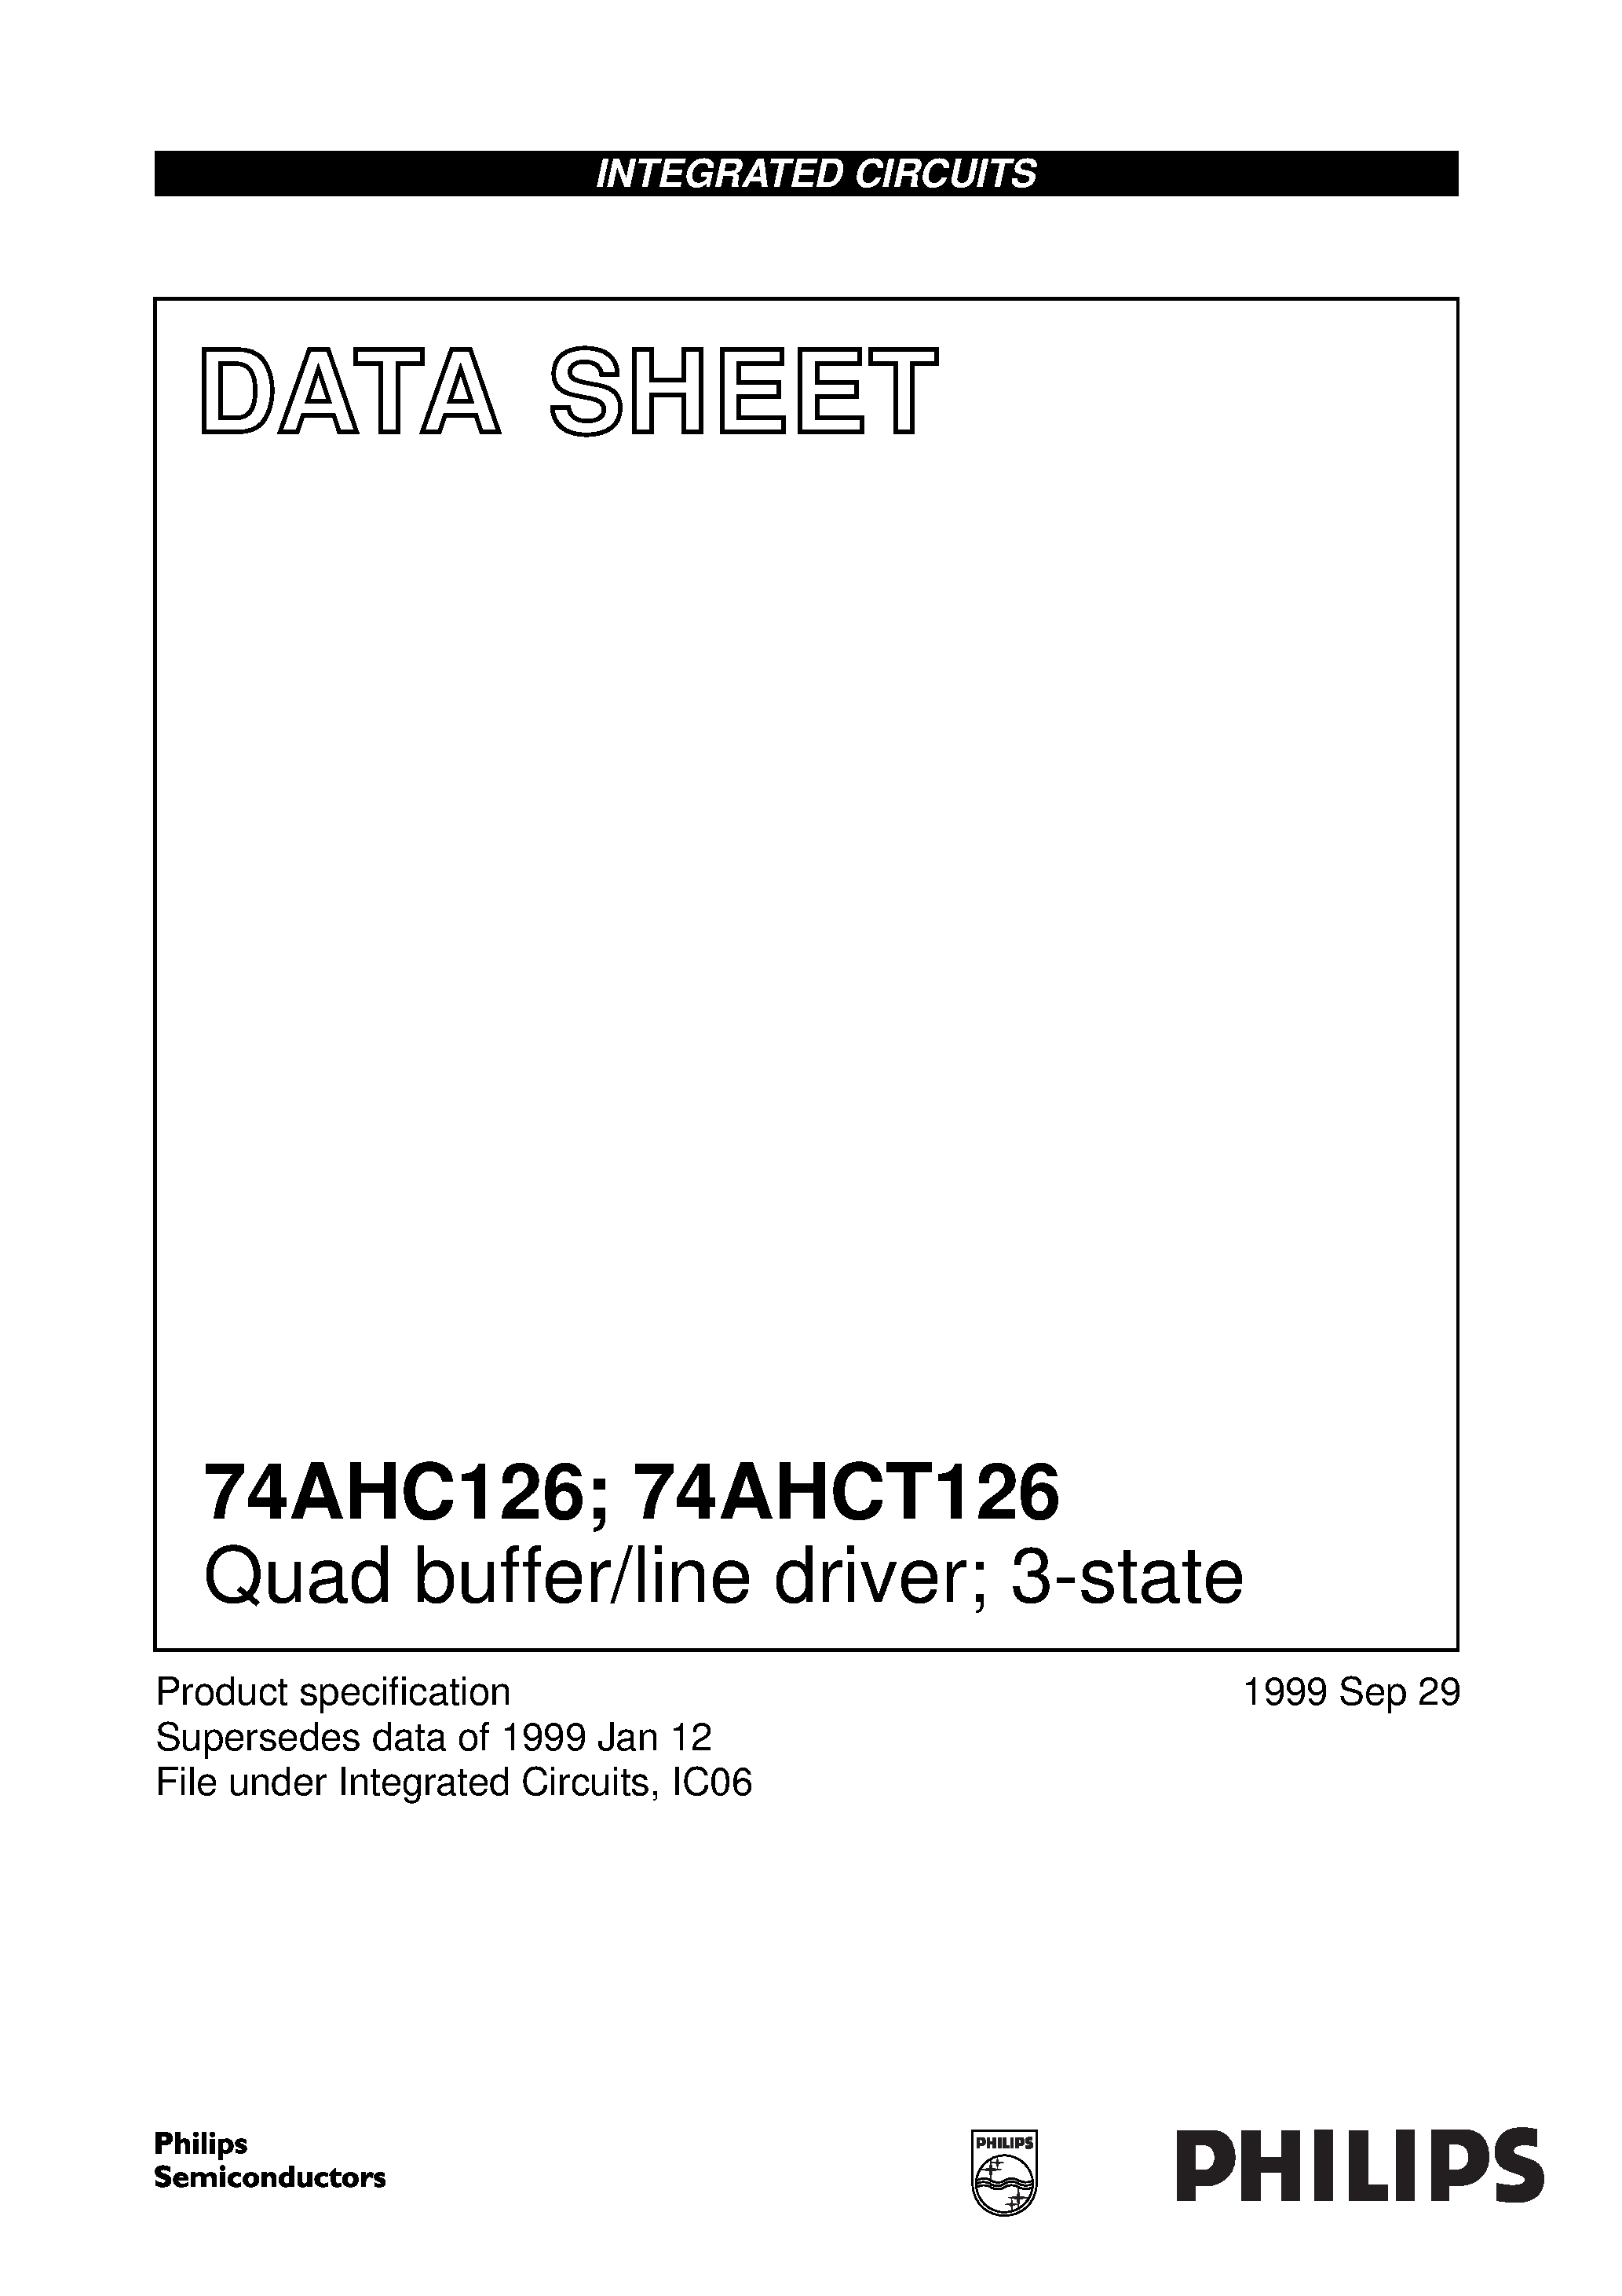 Даташит 74AHC126PW - Quad buffer/line driver; 3-state страница 1